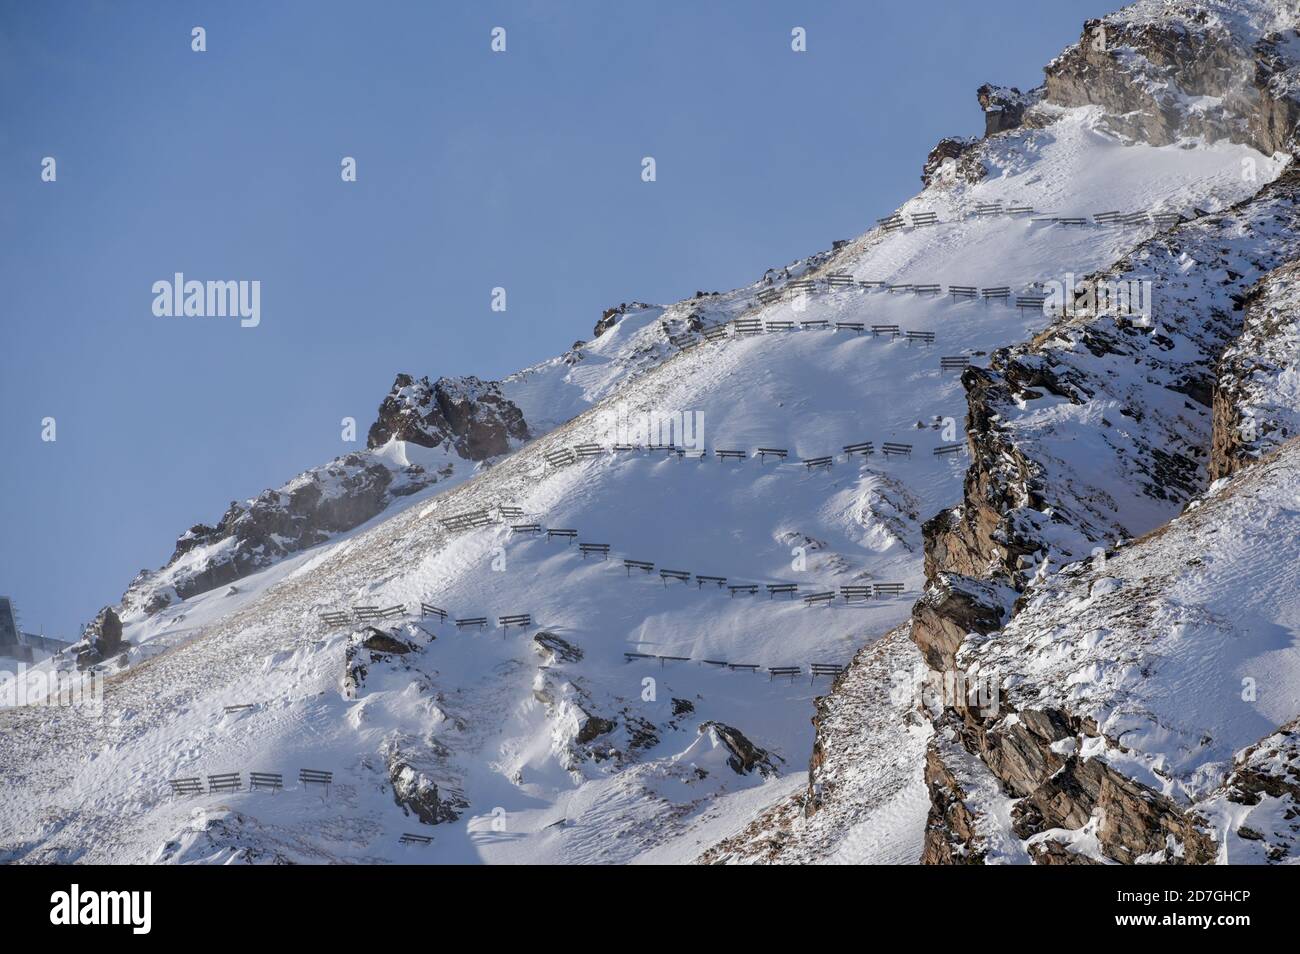 costruzione anti valanghe in alta montagna con neve bianca in inverno sulla stazione sciistica Foto Stock